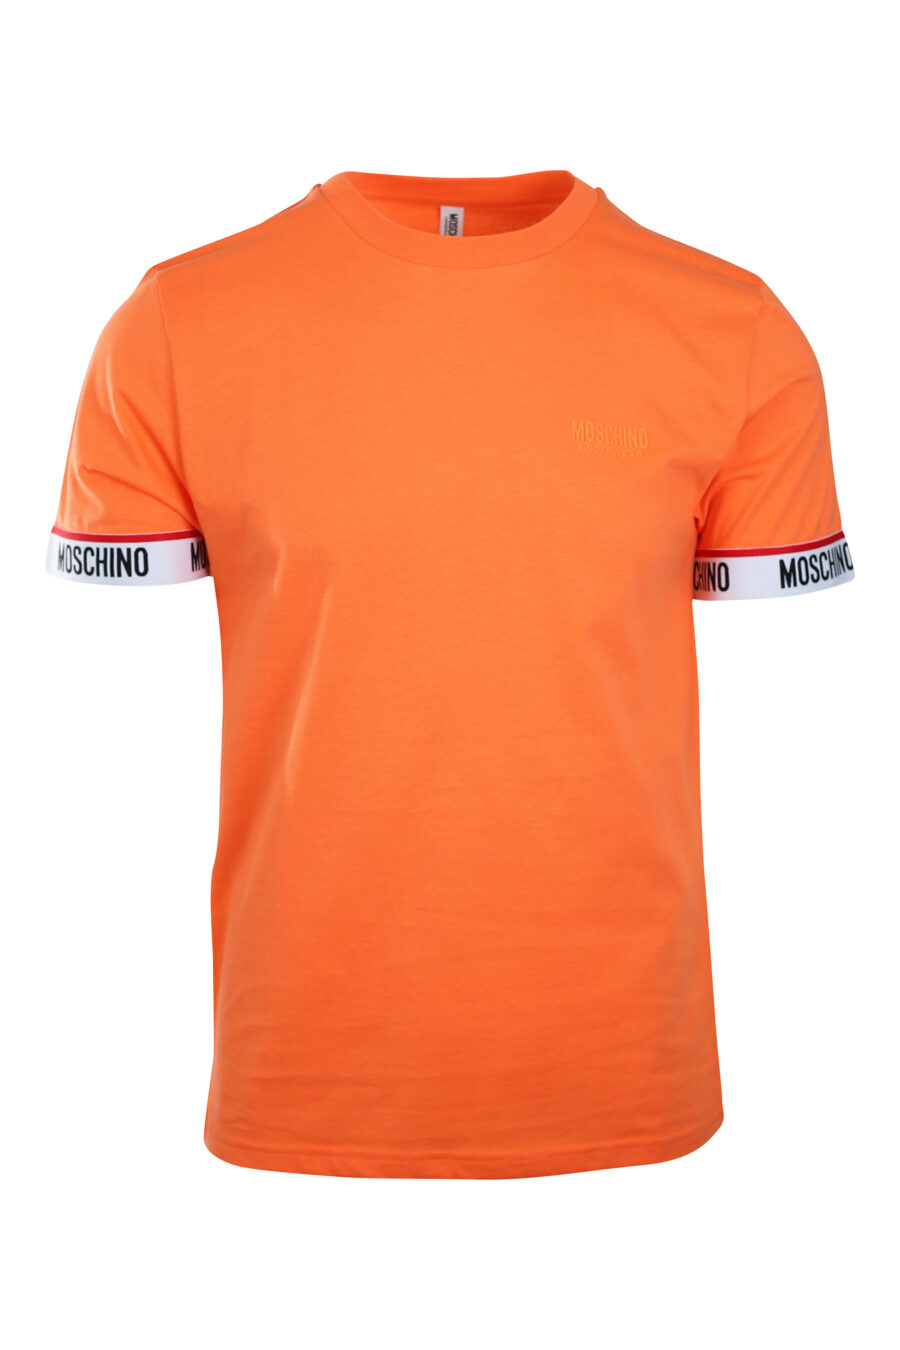 Orange T-shirt with logo band on sleeves and monochrome mini-logo - IMG 2206